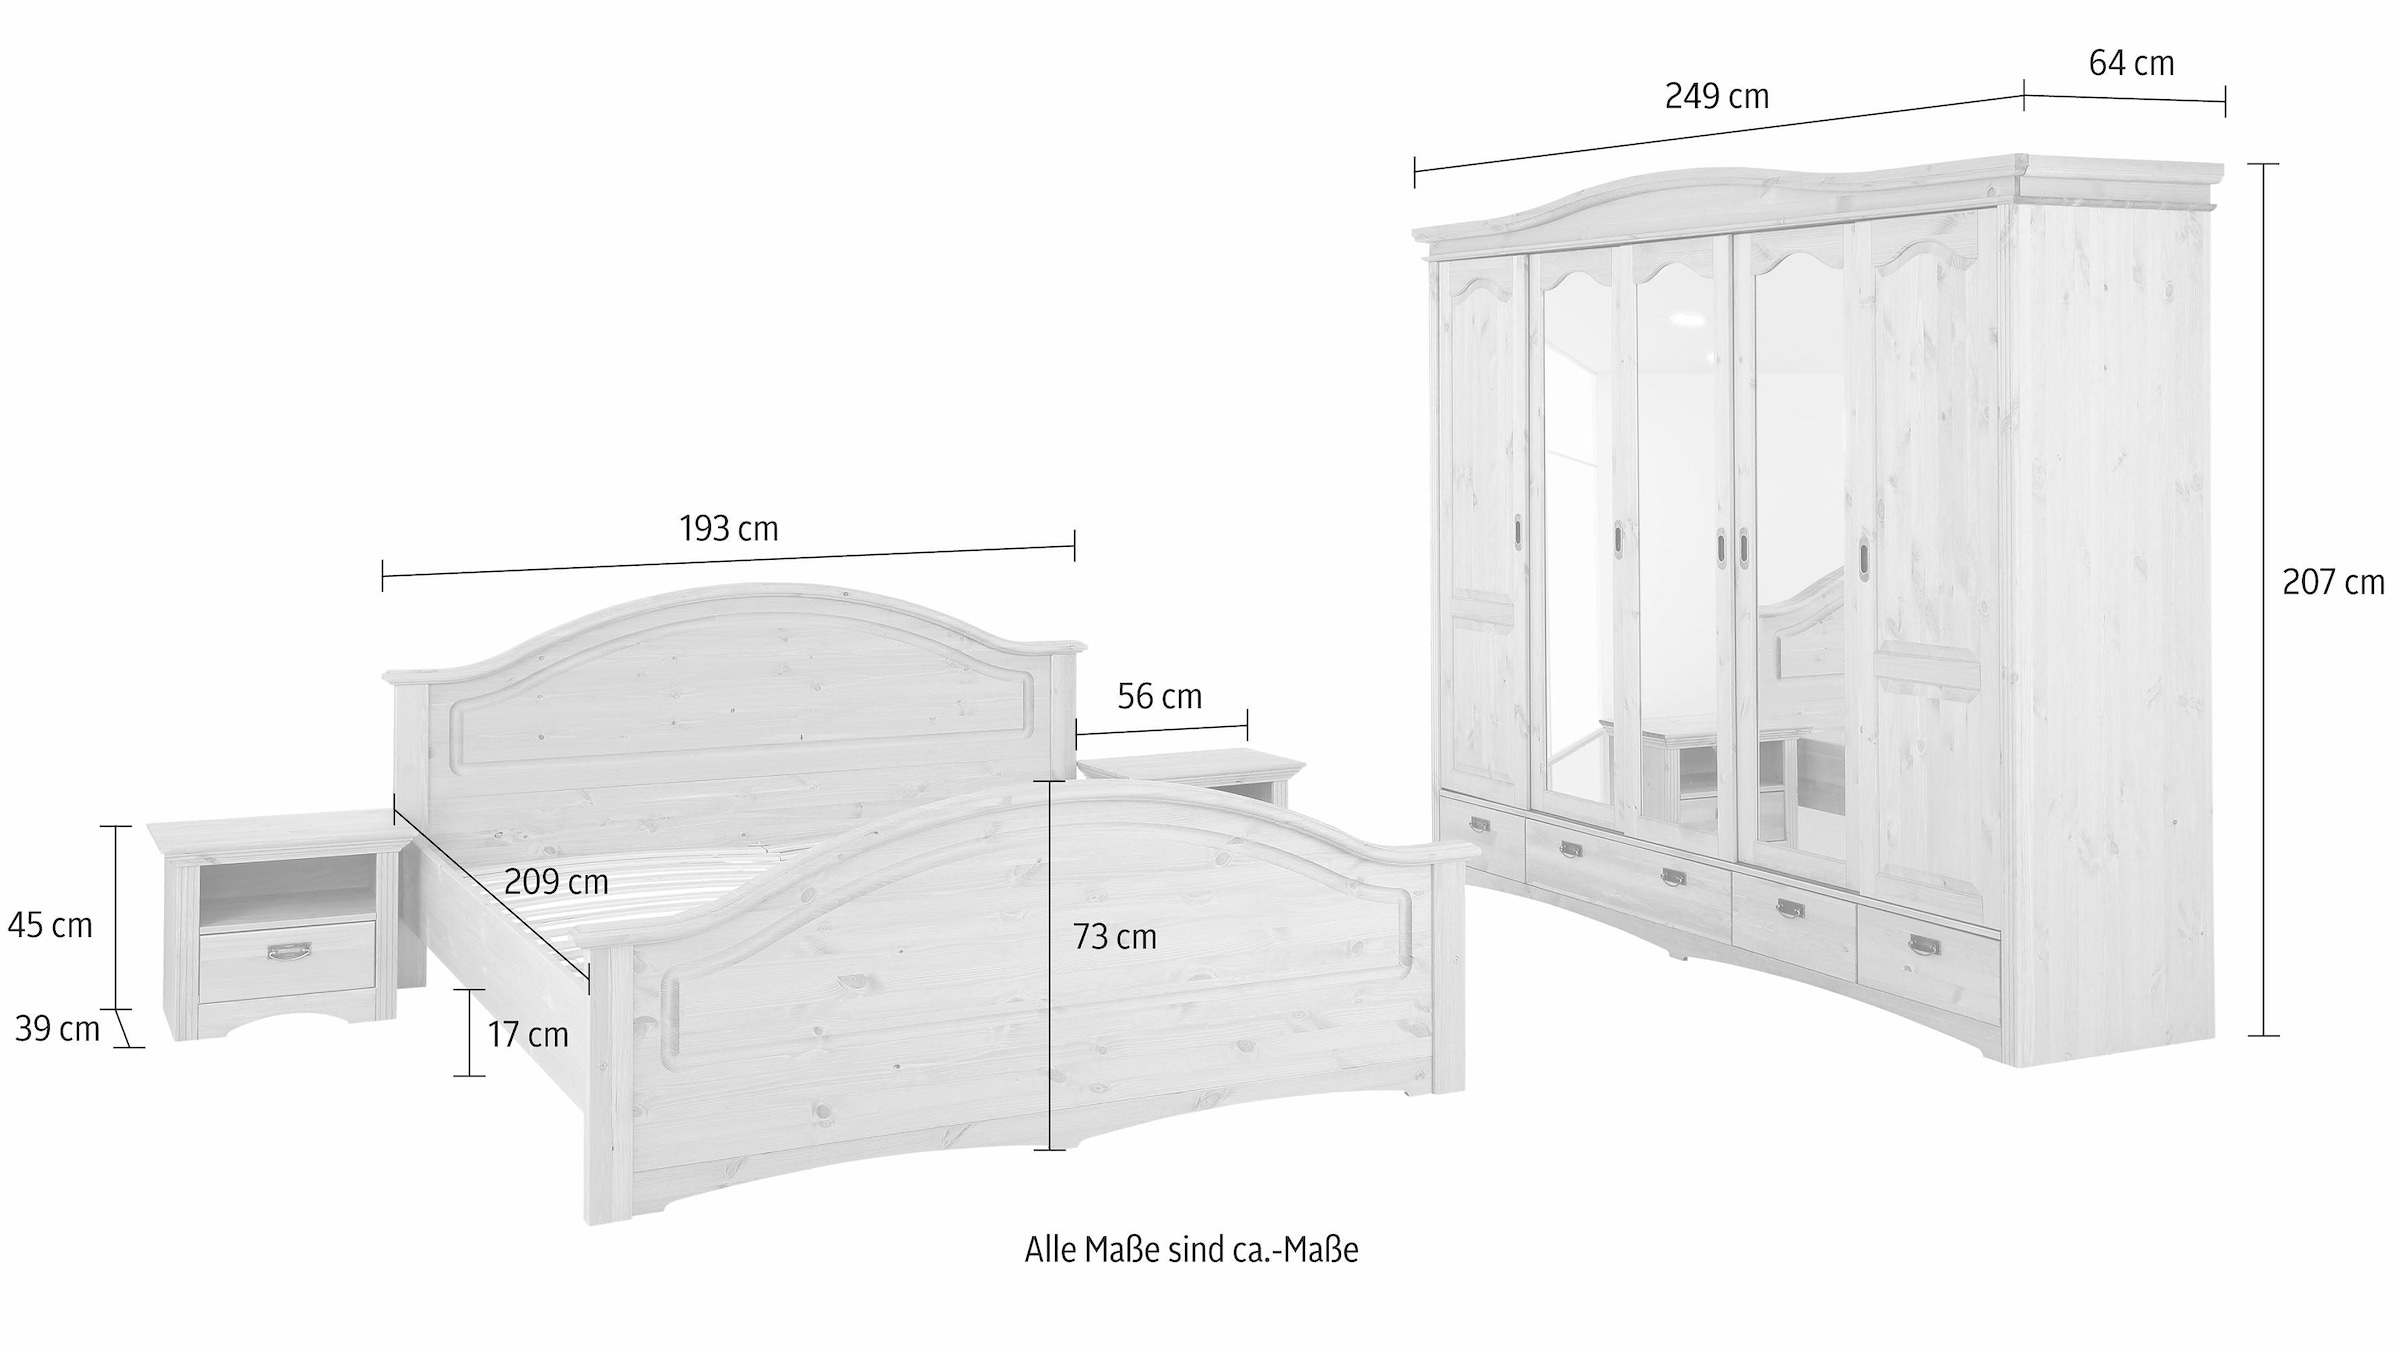 Home affaire Schlafzimmer-Set »Konrad«, (Set, 4 St.), mit 5-trg. Kleiderschrank, Bett 180/200 cm und 2 Nachttischen